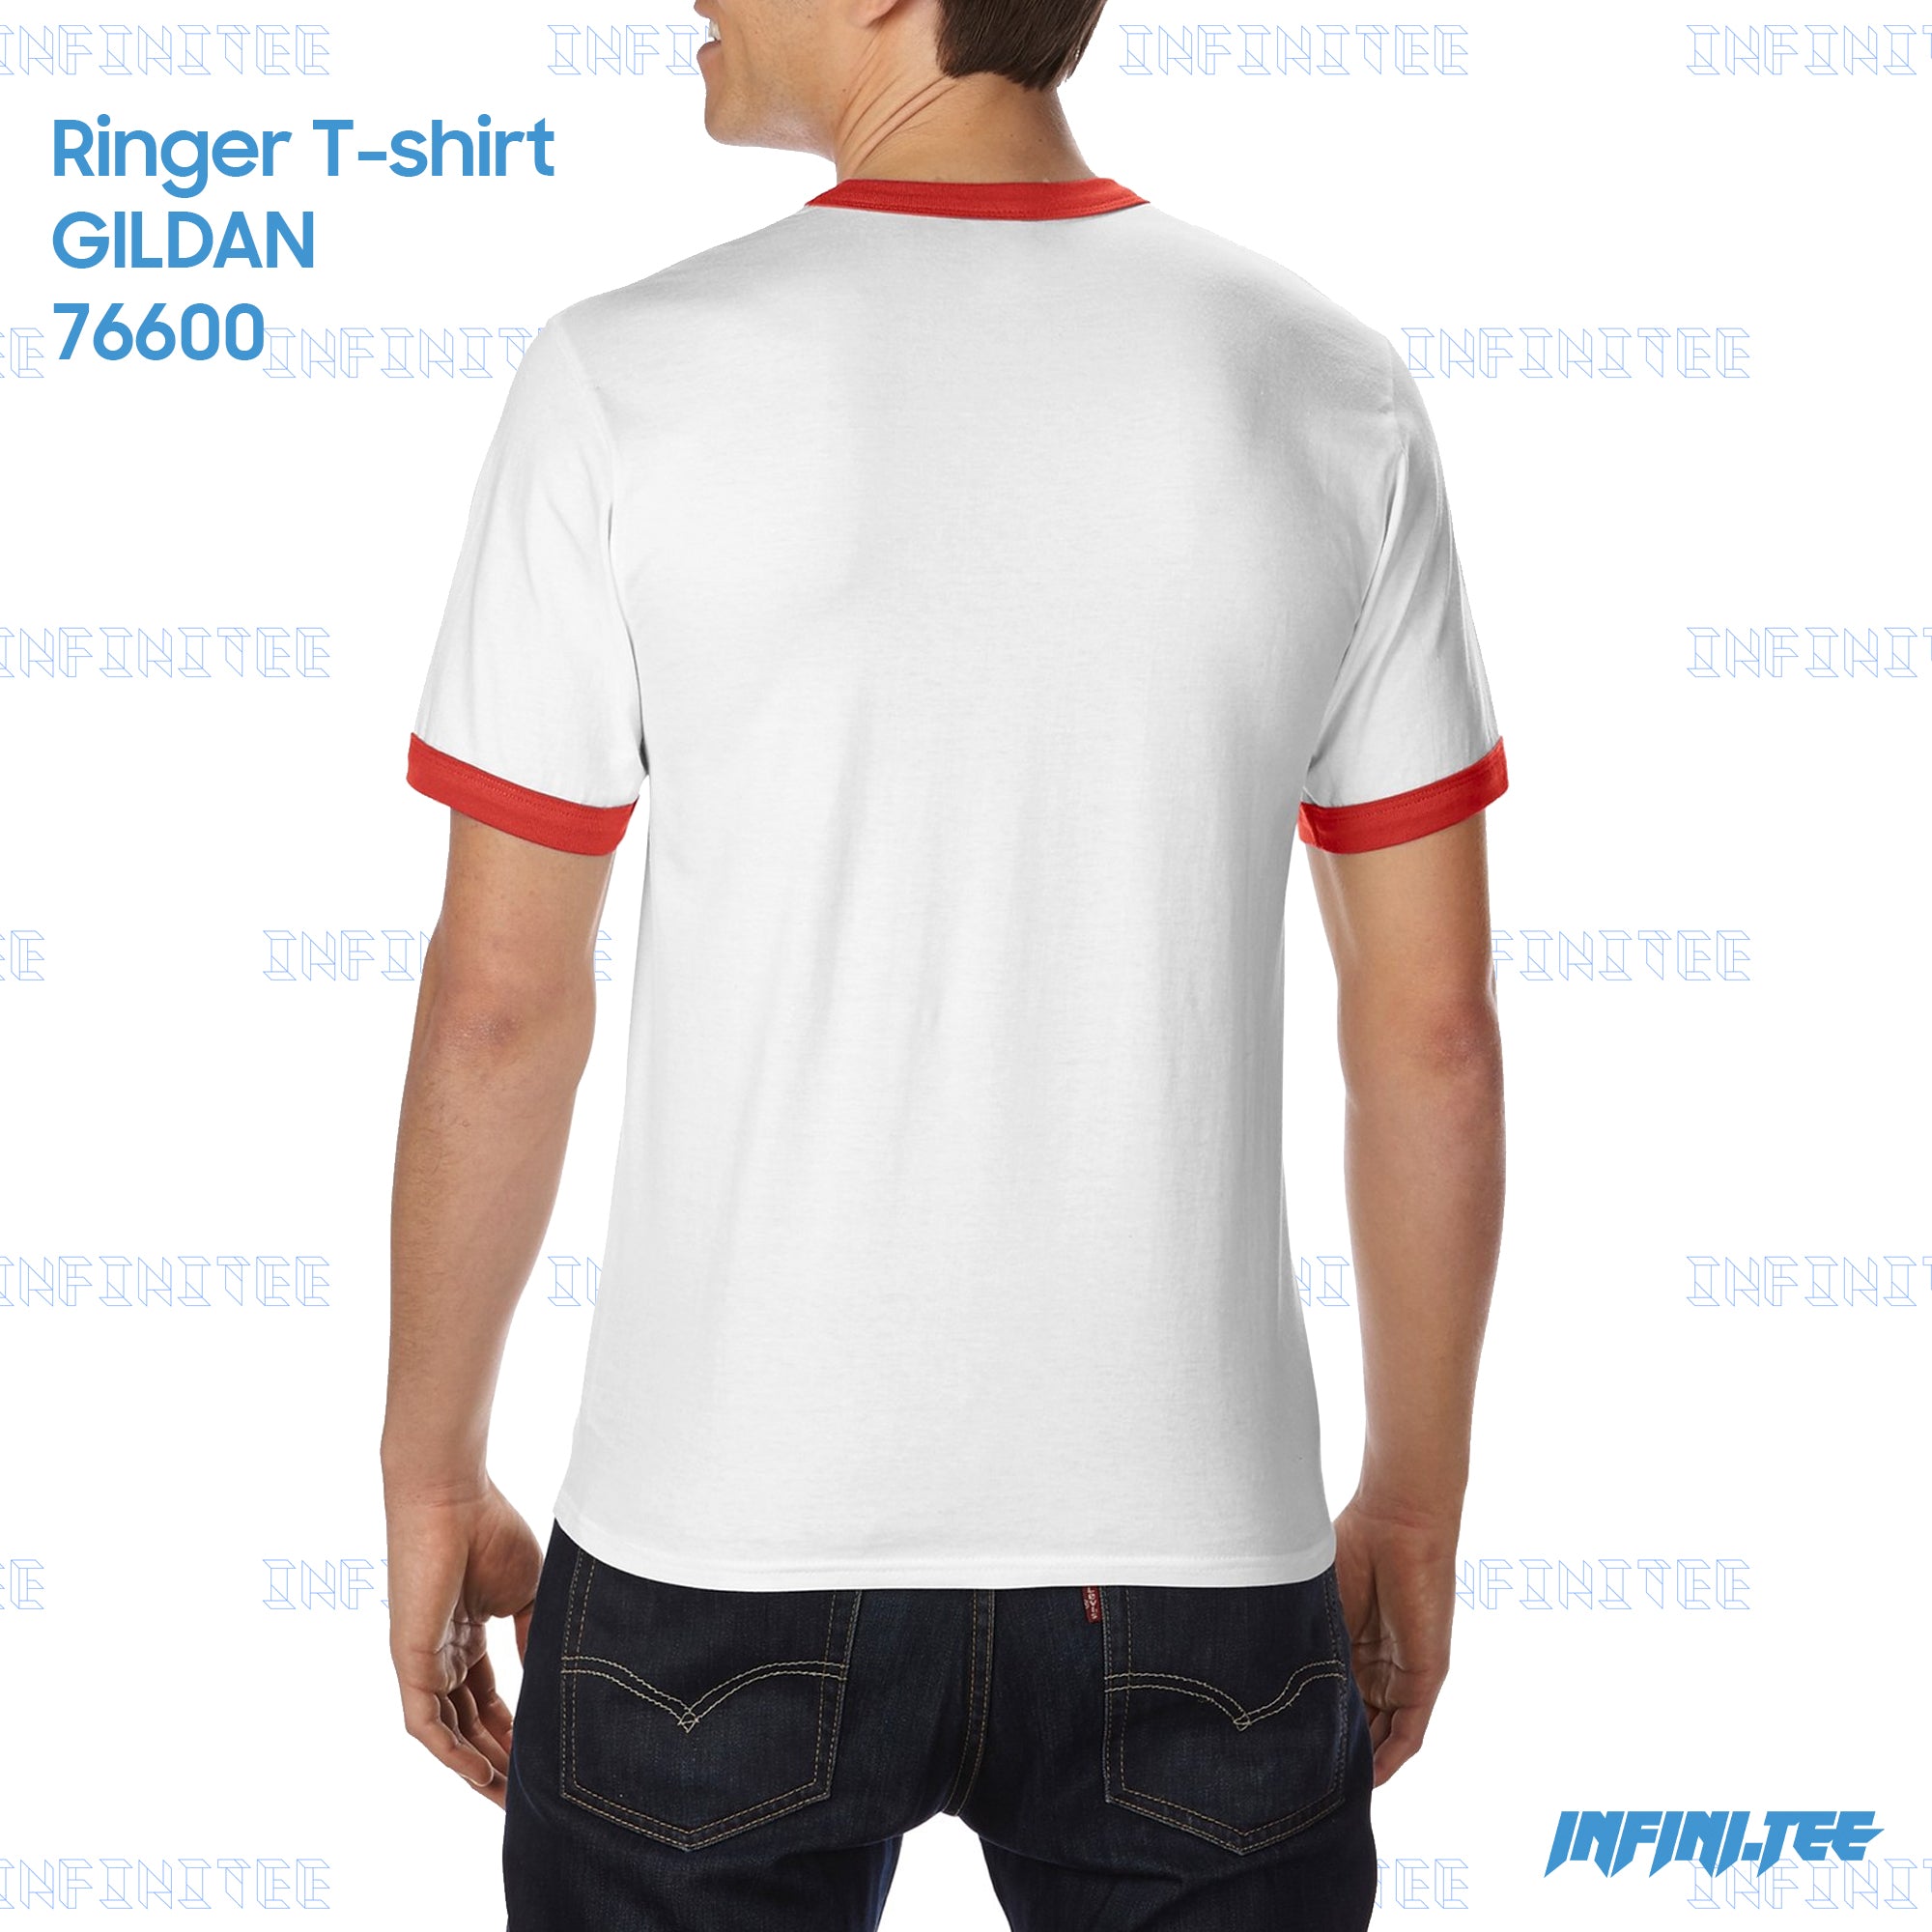 RINGER T-shirt 76600 GILDAN - WHITE/RED